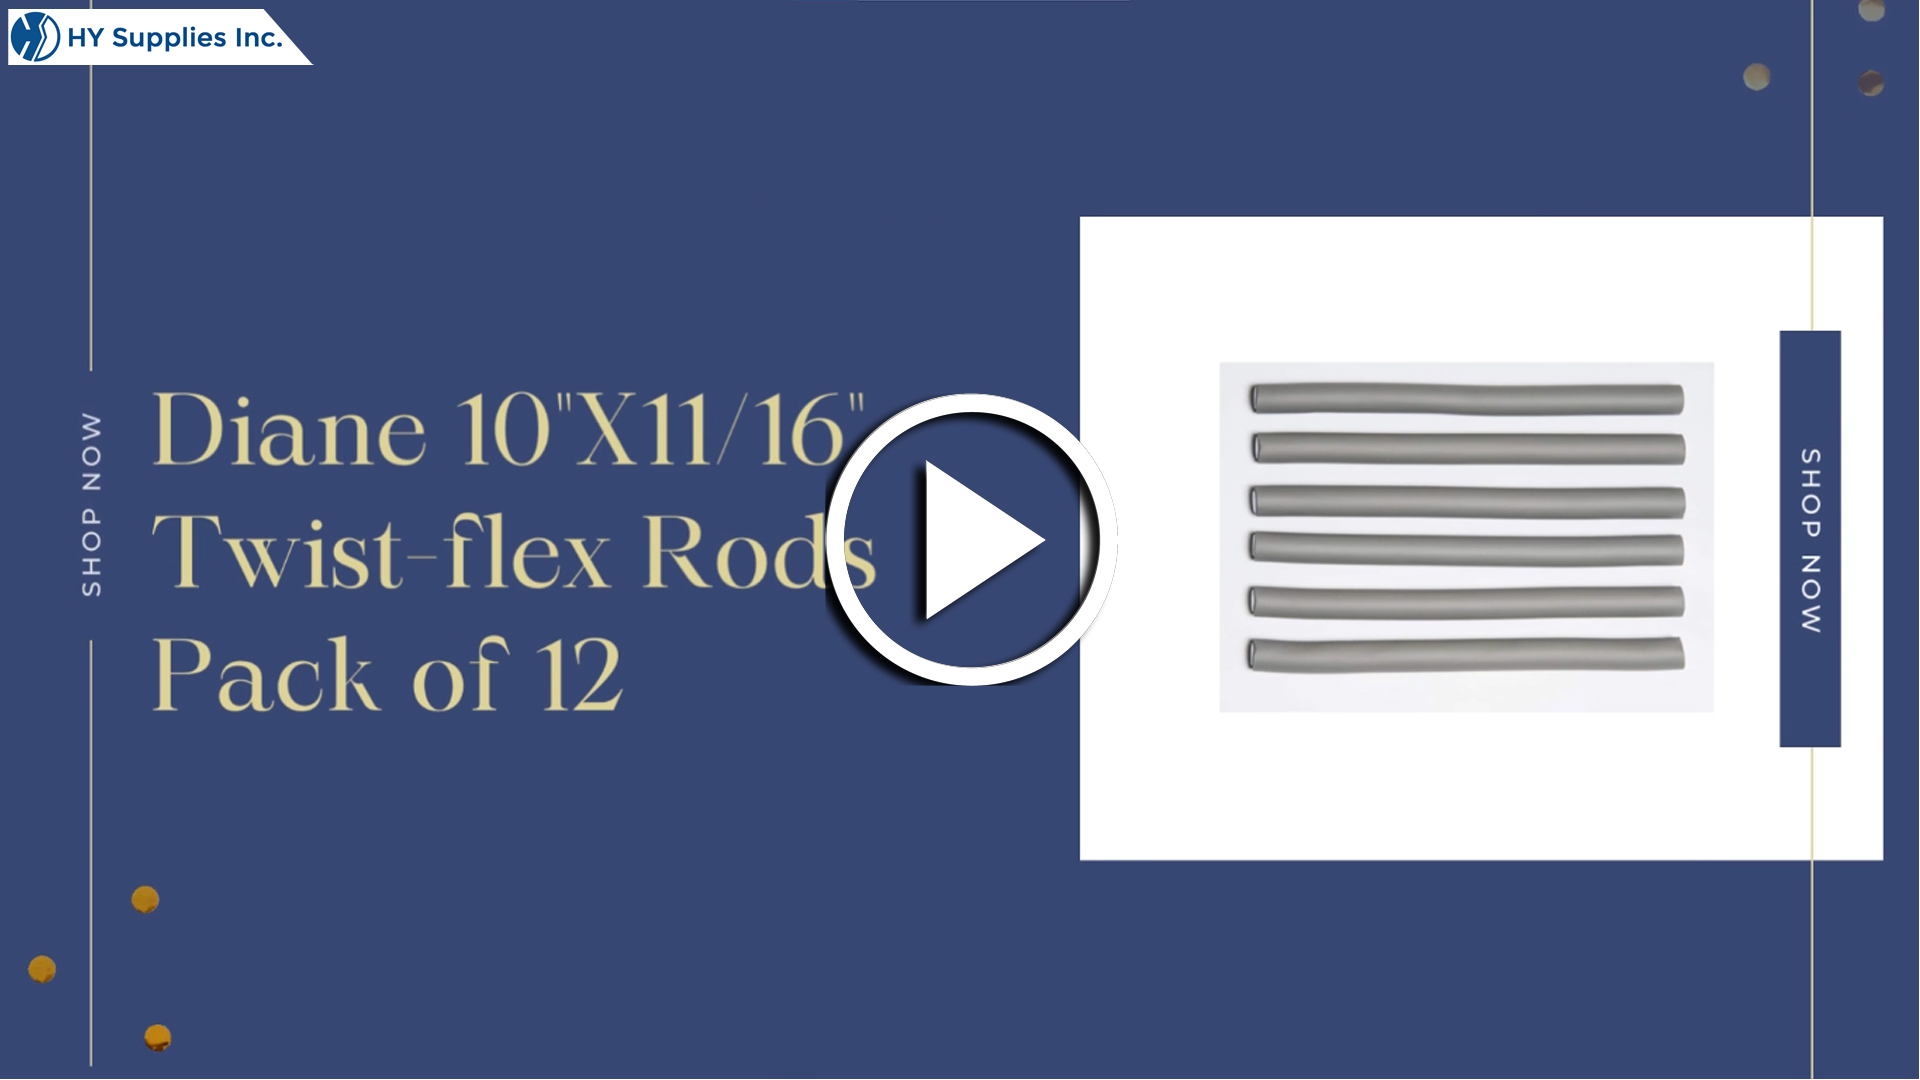 Diane 10" X 11/16" Twist-flex Rods - Pack of 12